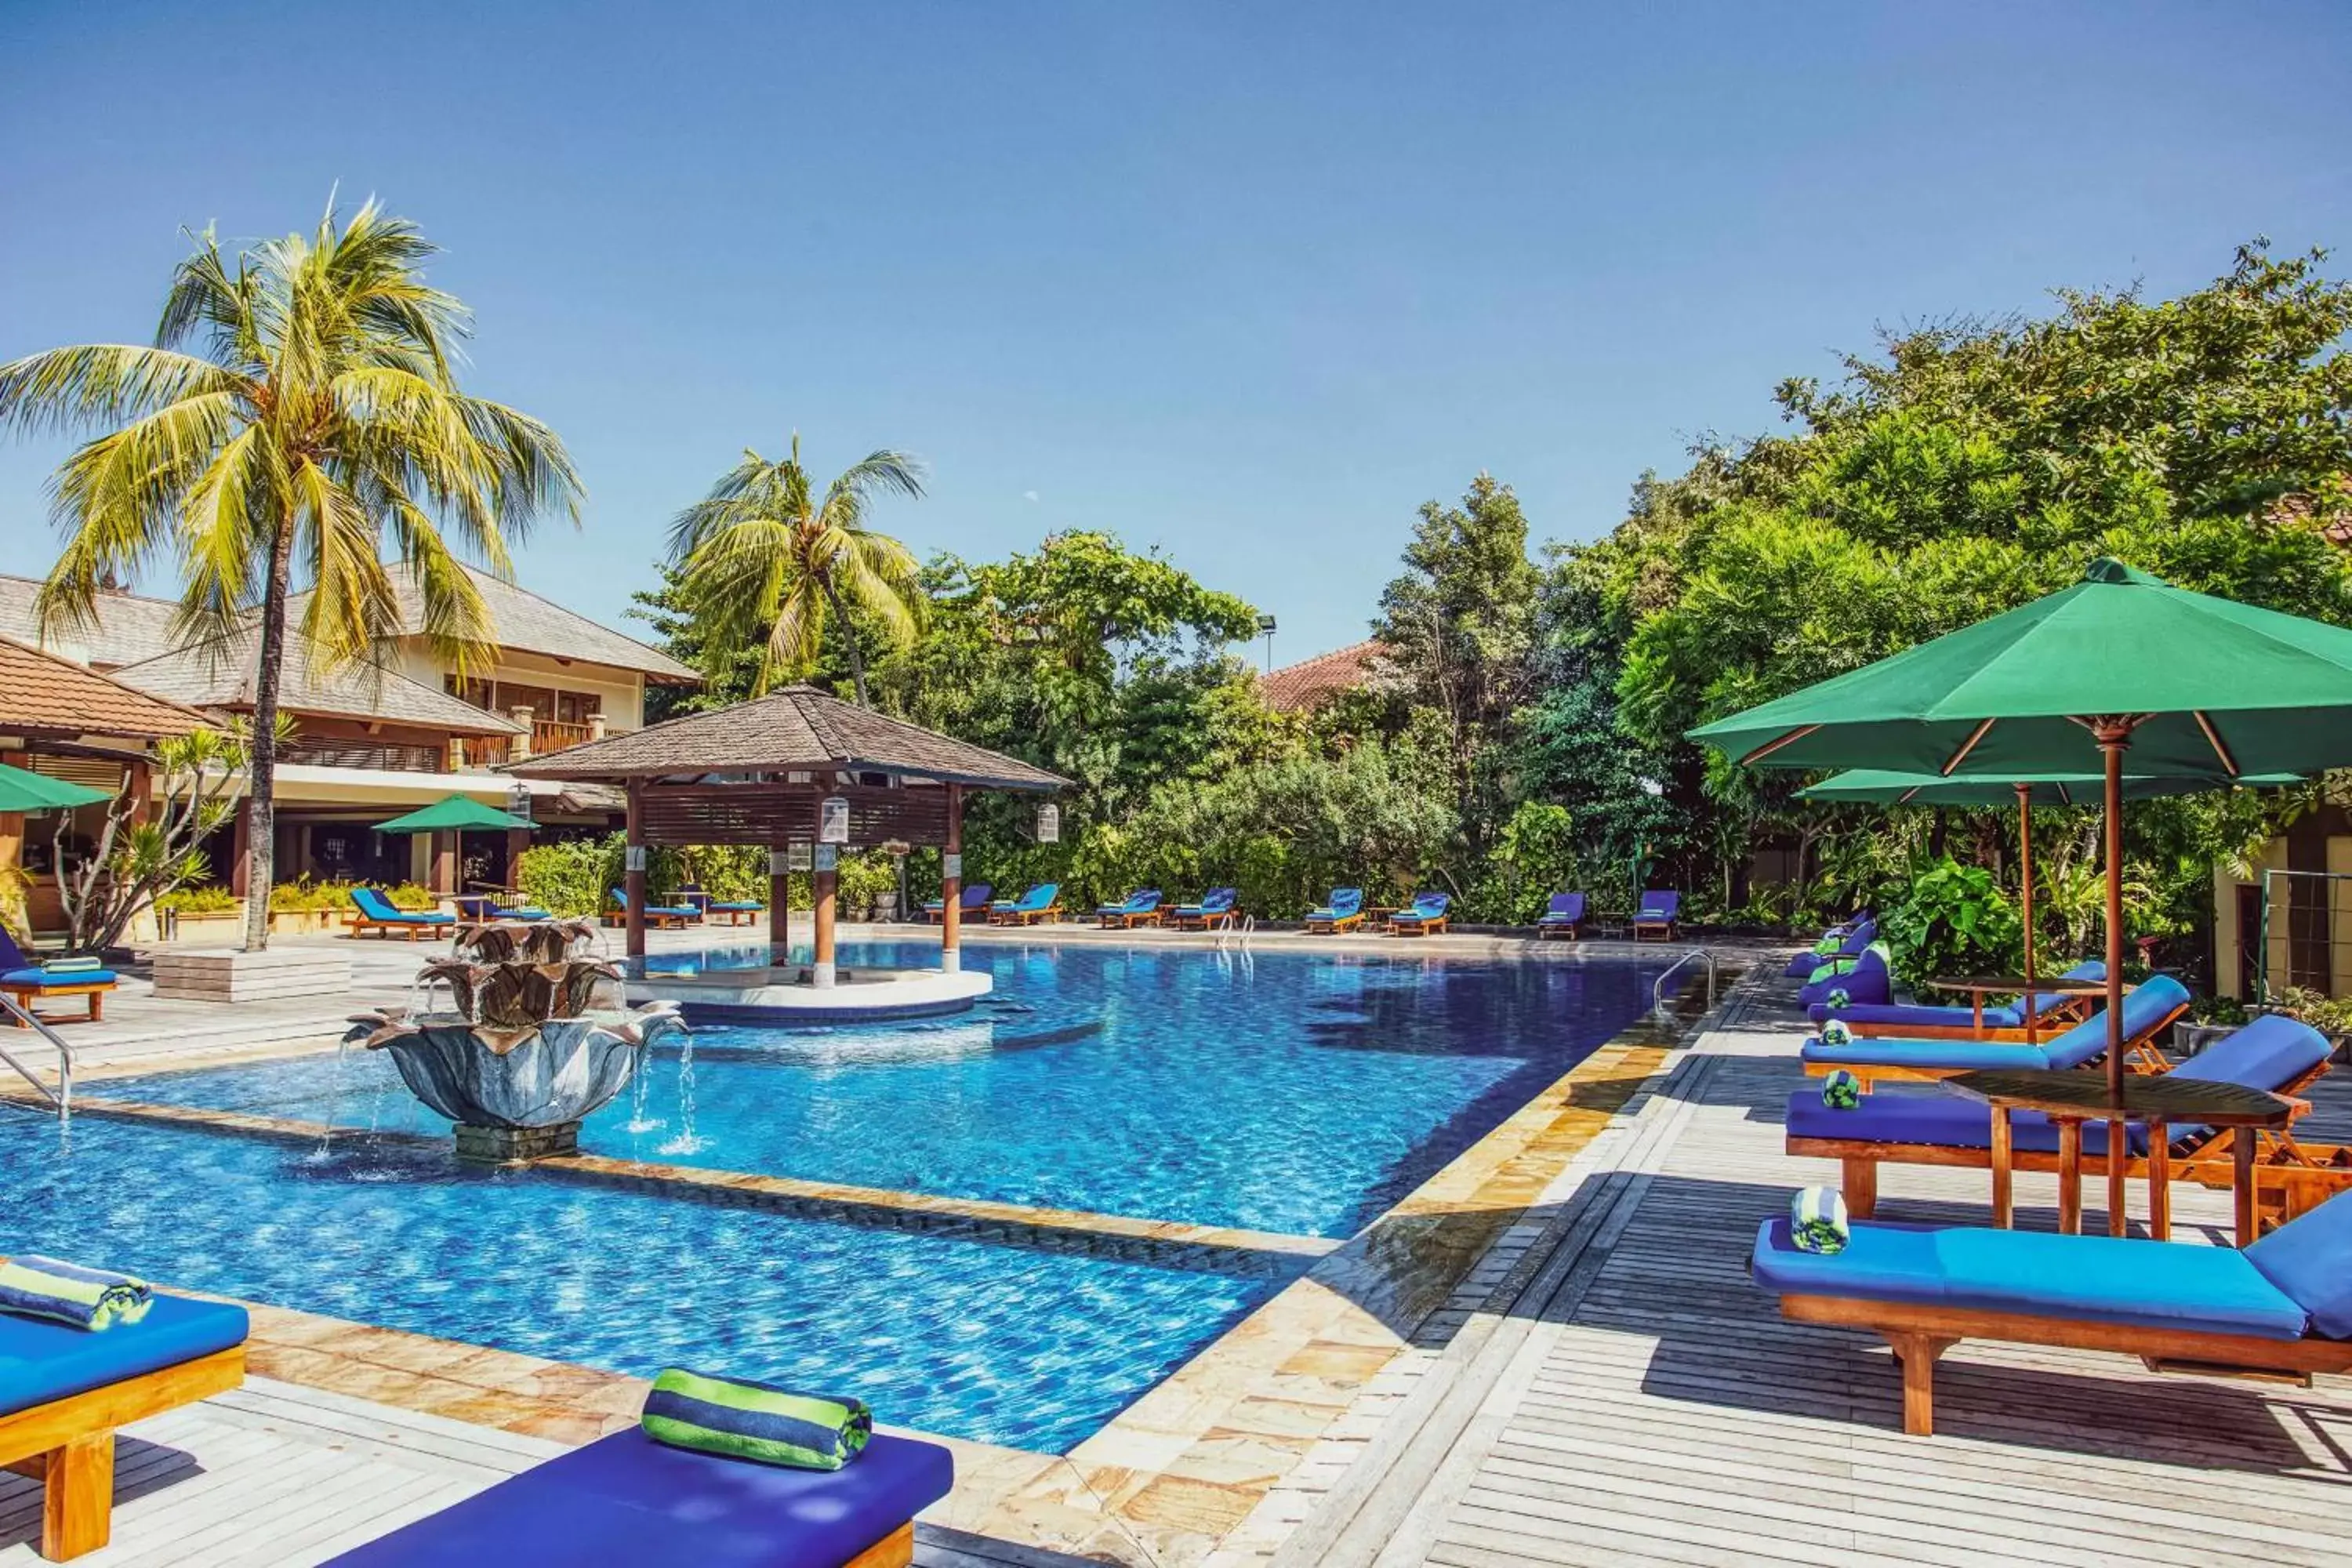 Swimming Pool in Risata Bali Resort & Spa